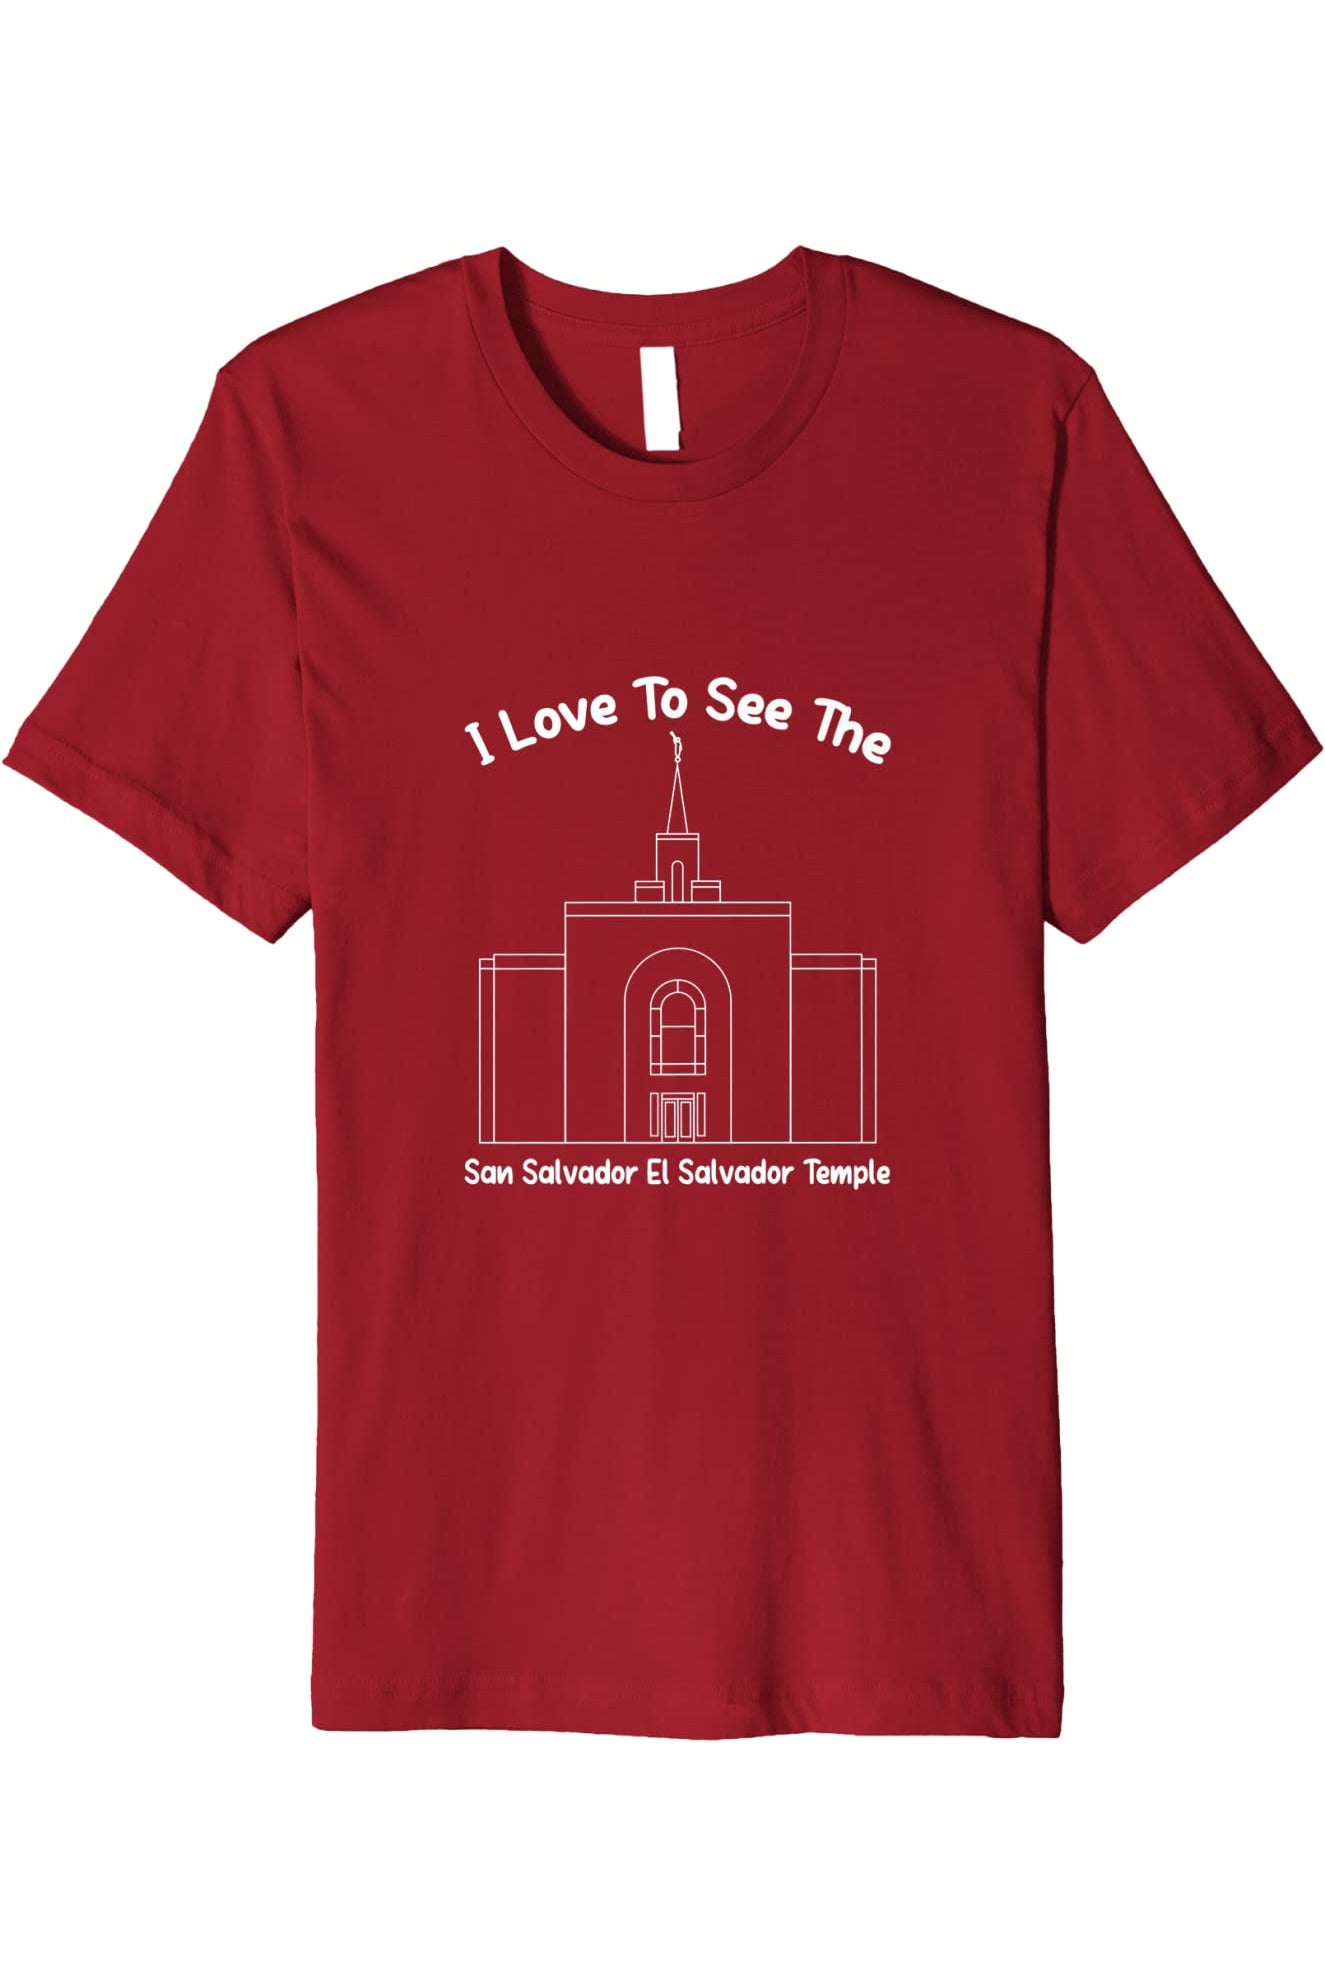 San Salvador El Salvador Temple T-Shirt - Premium - Primary Style (English) US